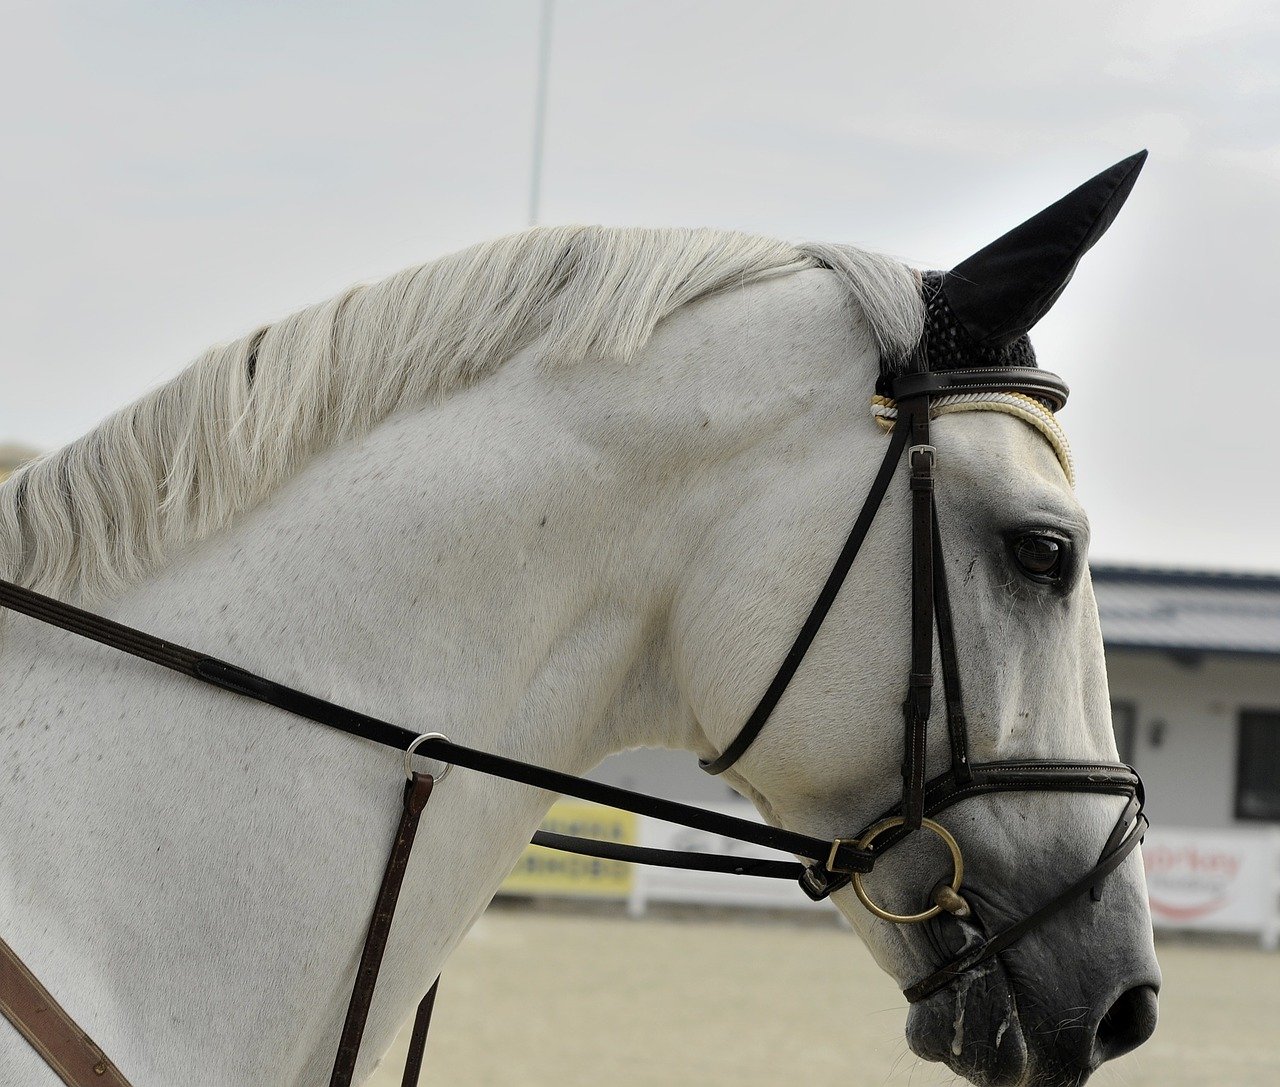 大注目 純白の美しい馬 ソダシ は競馬に興味なくても要チェック めぐなにブログ